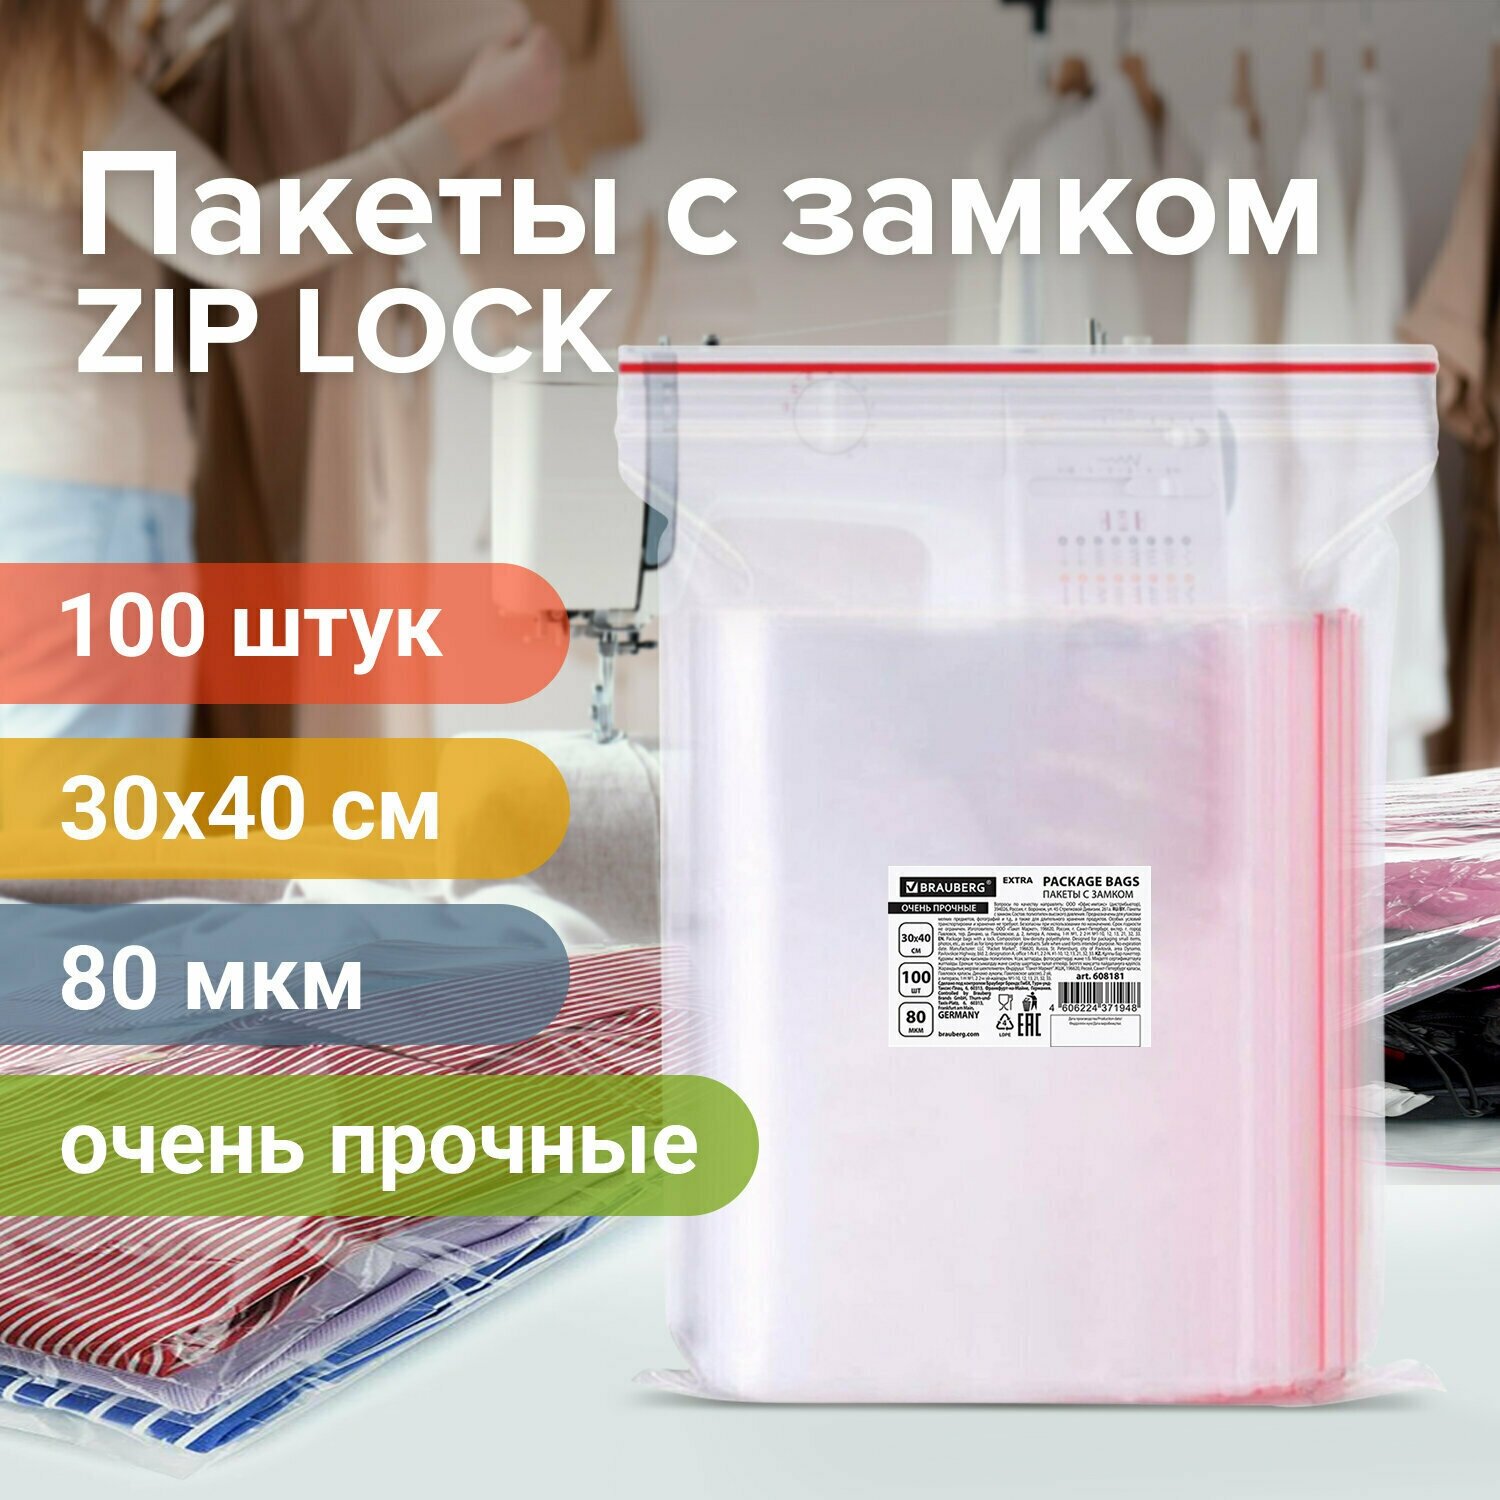 Пакеты ZIP LOCK «зиплок» очень прочные, комплект 100 шт, 300×400 мм, ПВД 80 мкм, BRAUBERG EXTRA, 608181 /Квант продажи 1 ед./